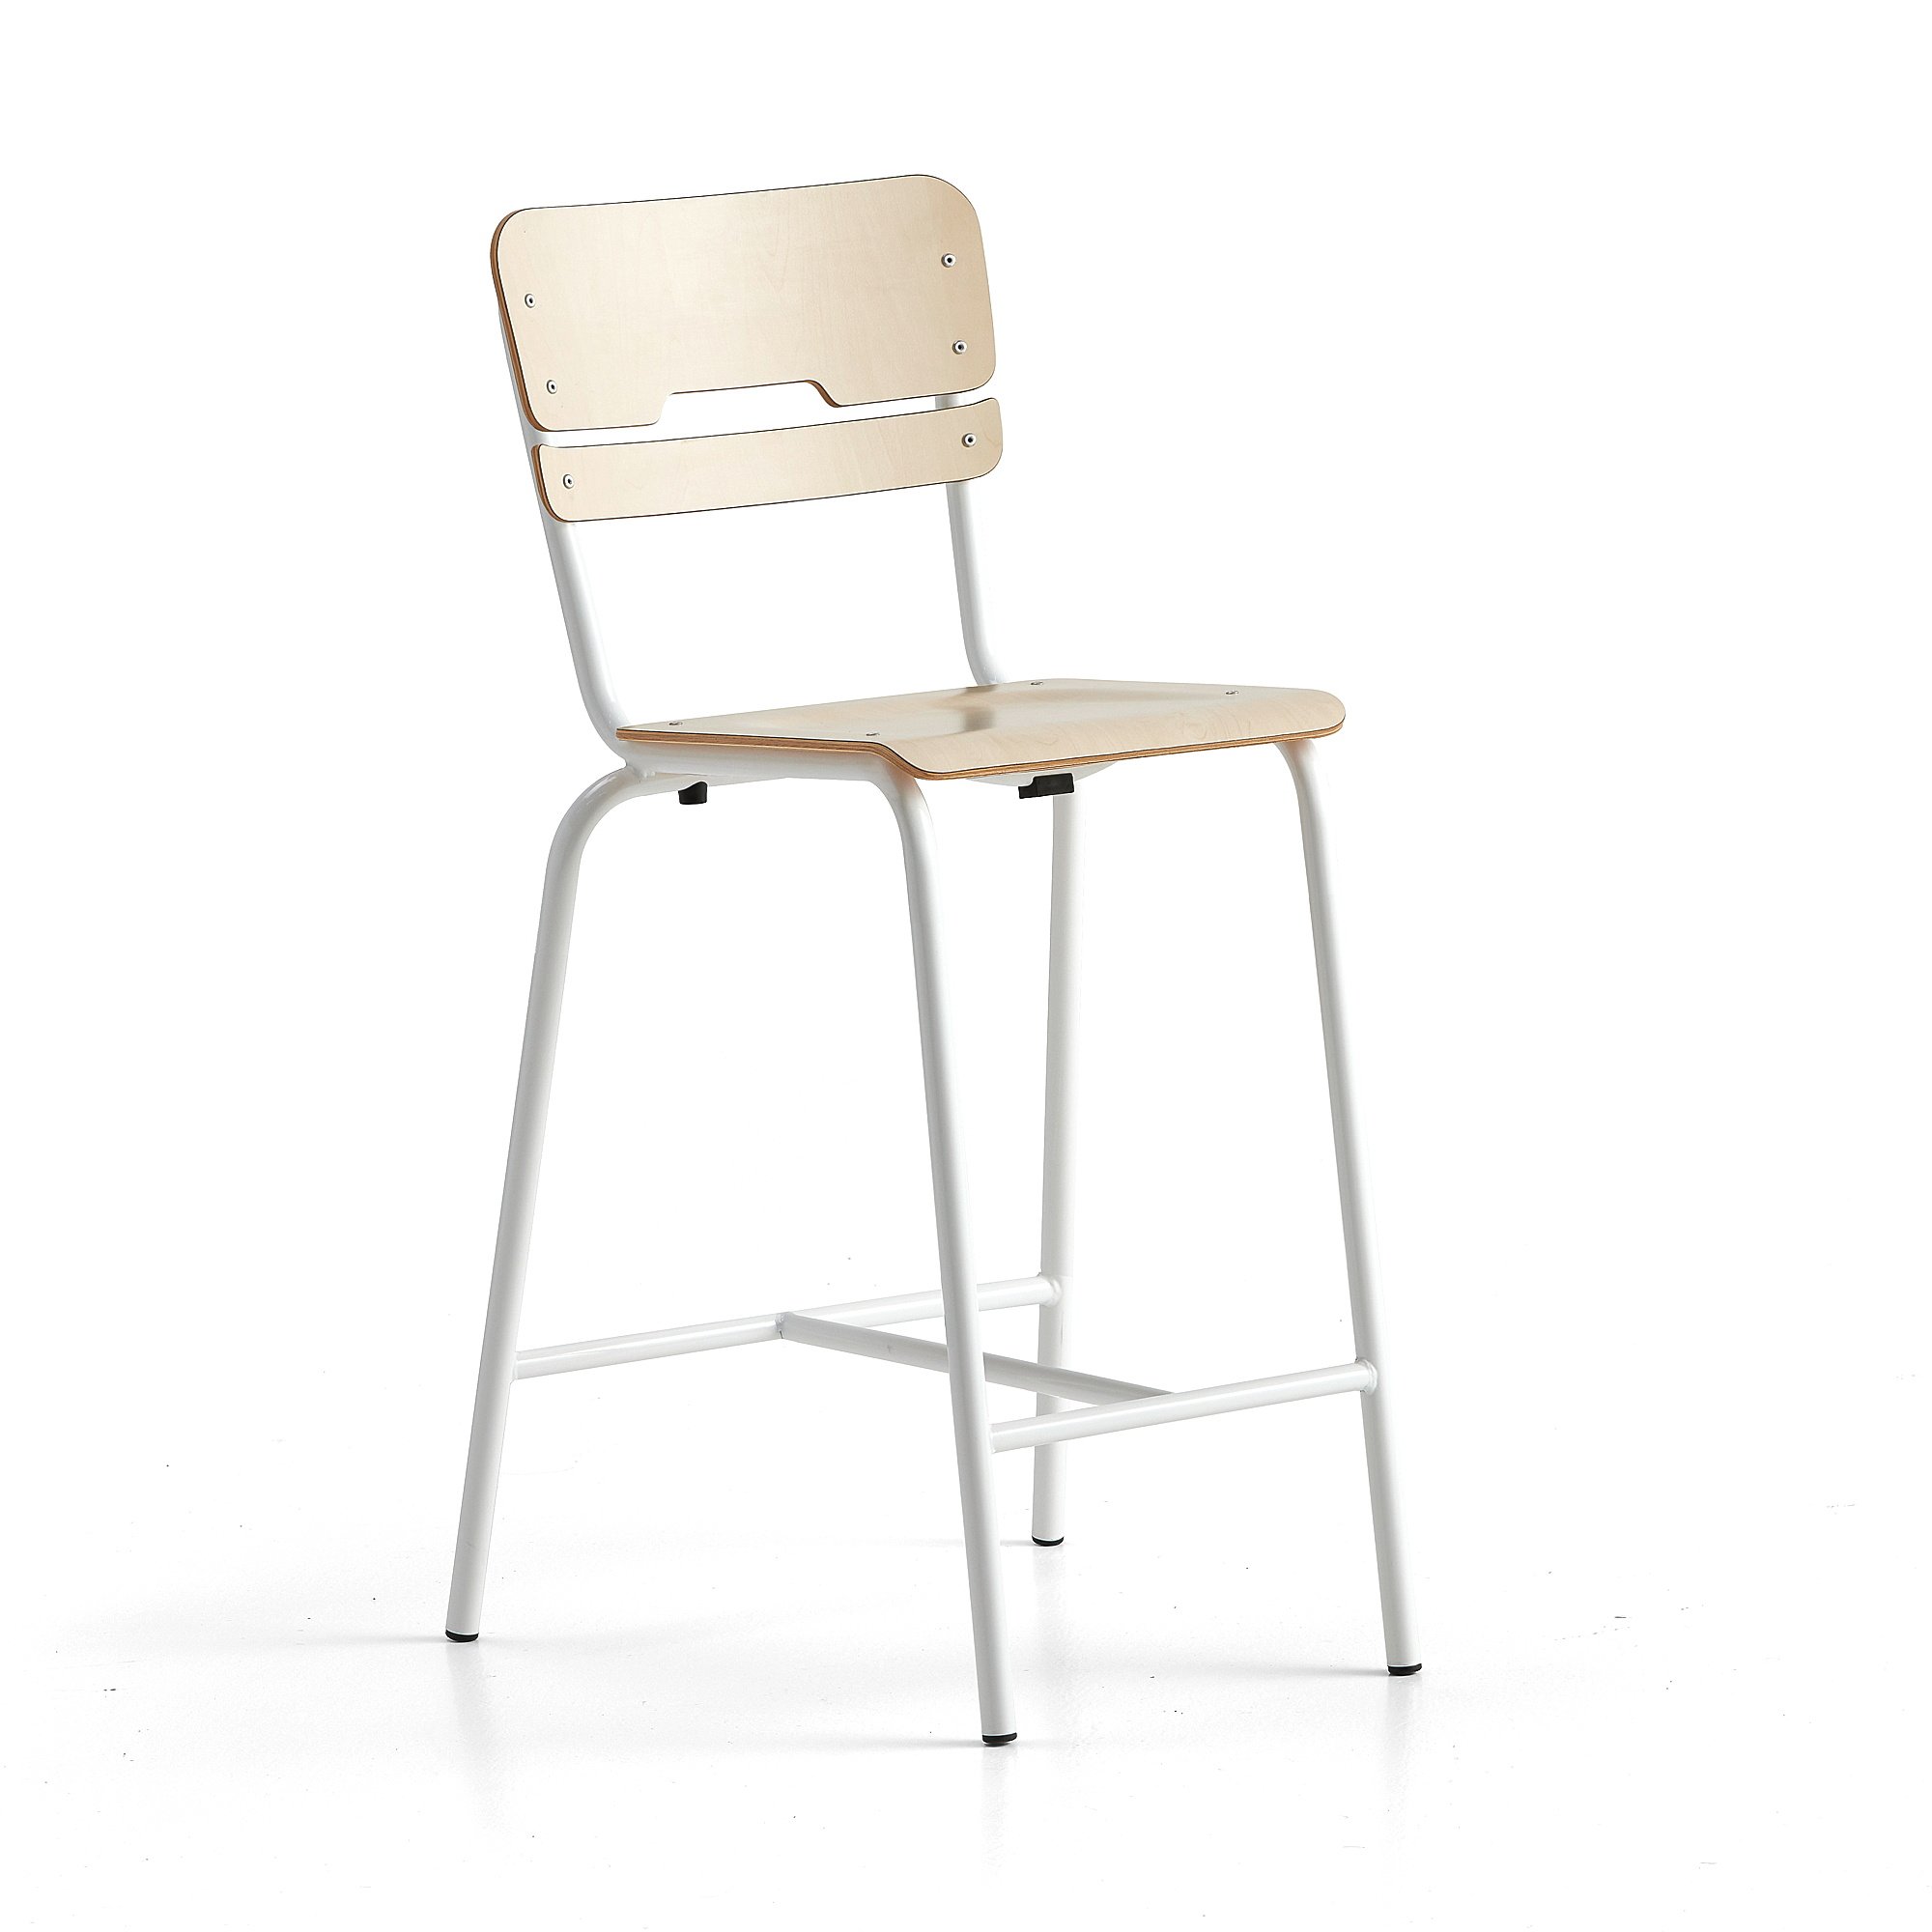 Školní židle SCIENTIA, sedák 360x360 mm, výška 650 mm, bílá/bříza